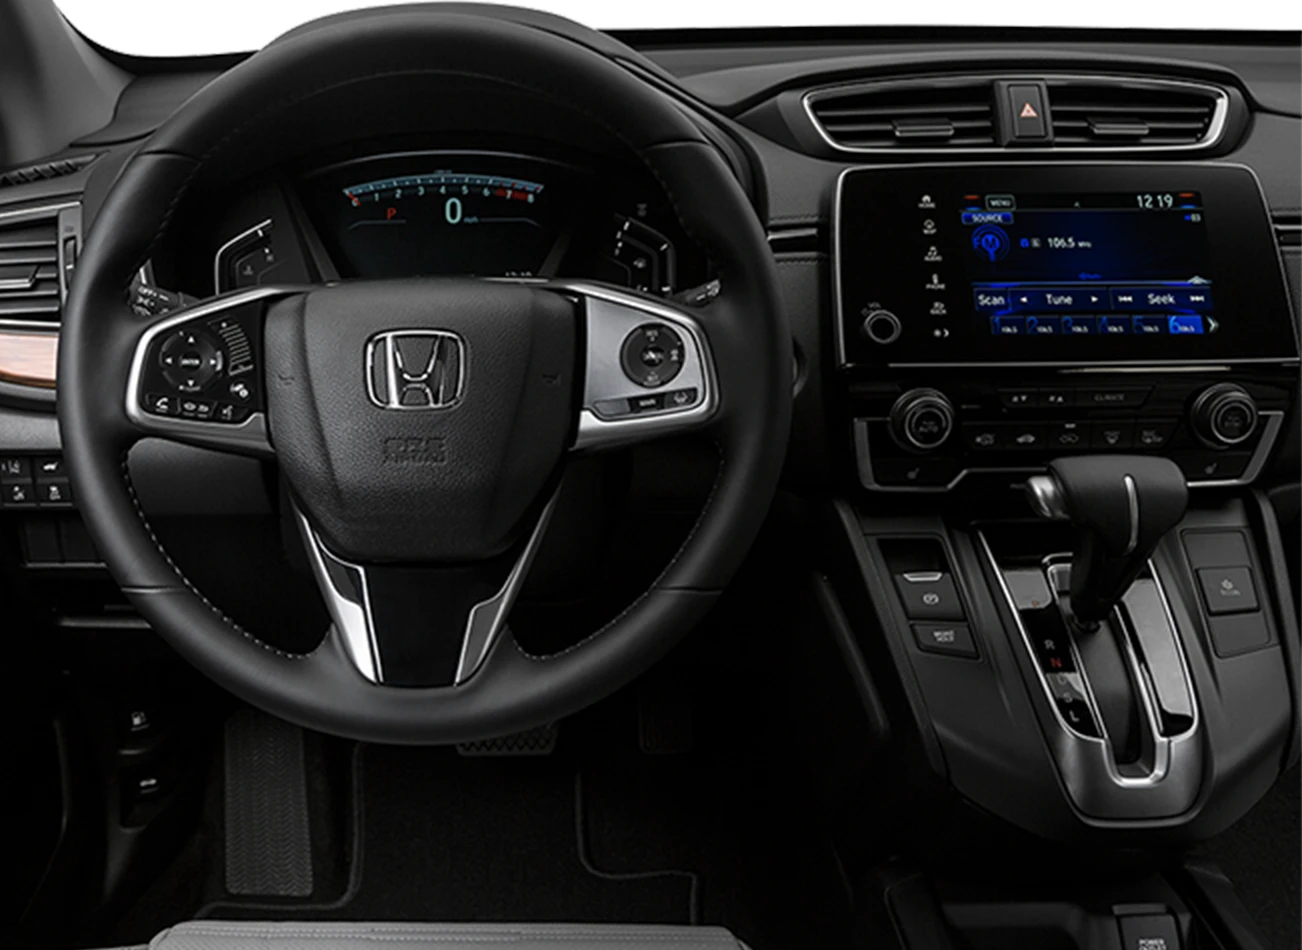 2019 Honda CR-V: Reviews, Photos, and More: Reasons to Buy #4 | CarMax